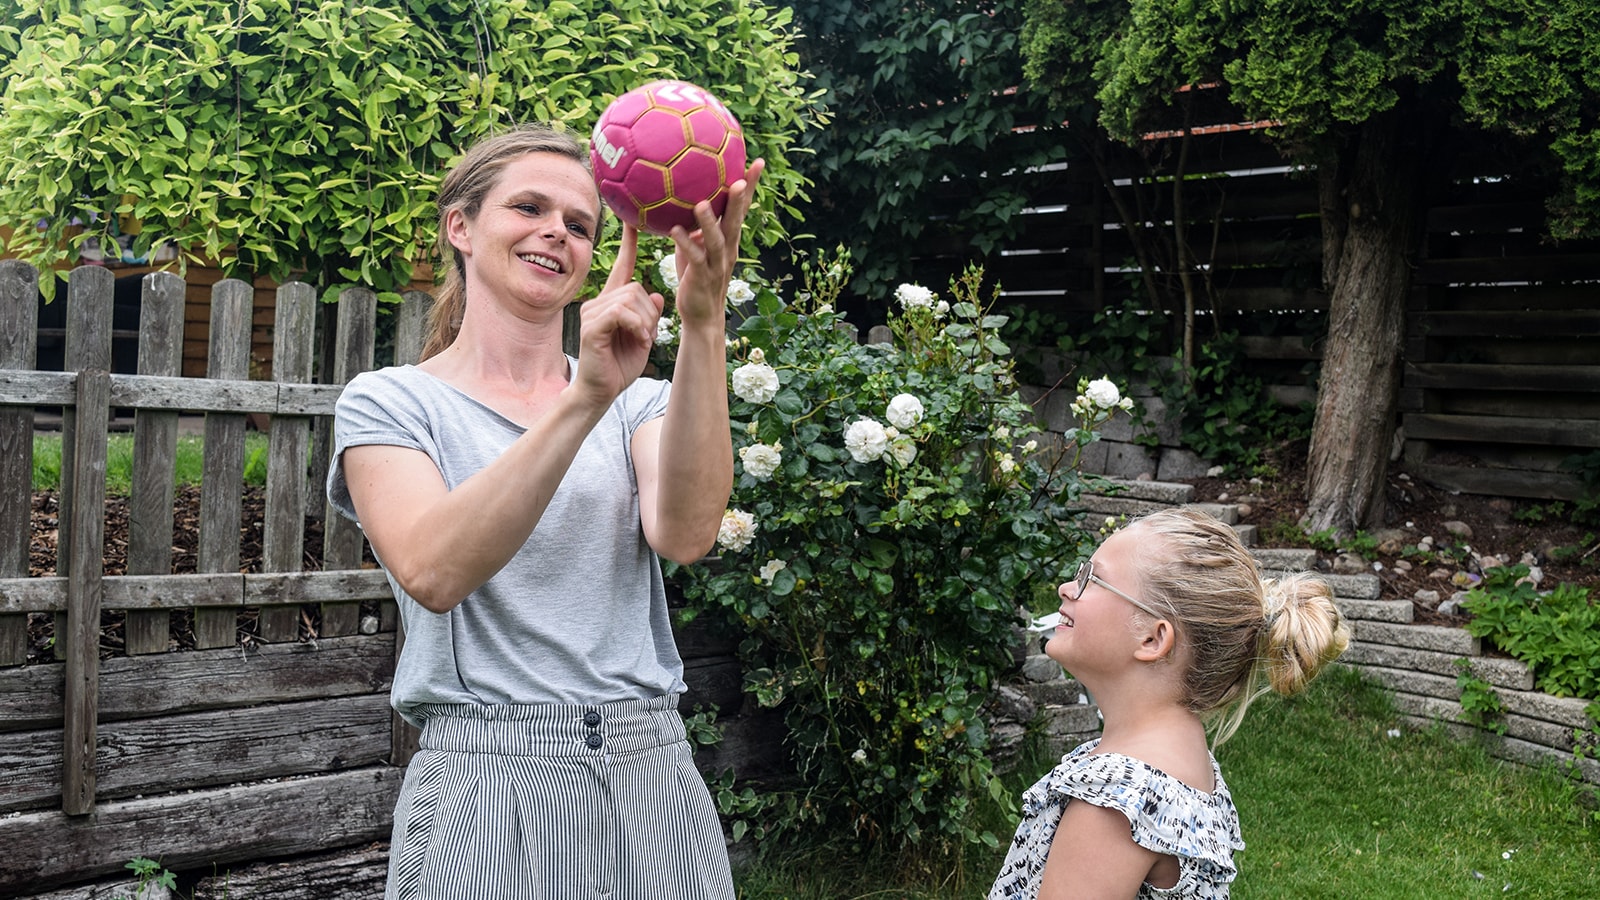 35-årige Karina Bøgeskov Birk vil gerne give glæden ved at røre sig, have det sjovt og være en del af et hold videre til sin datter. Derfor etablerede hun i 2019 et håndboldhold for børn i Lisbjerg ved Aarhus.